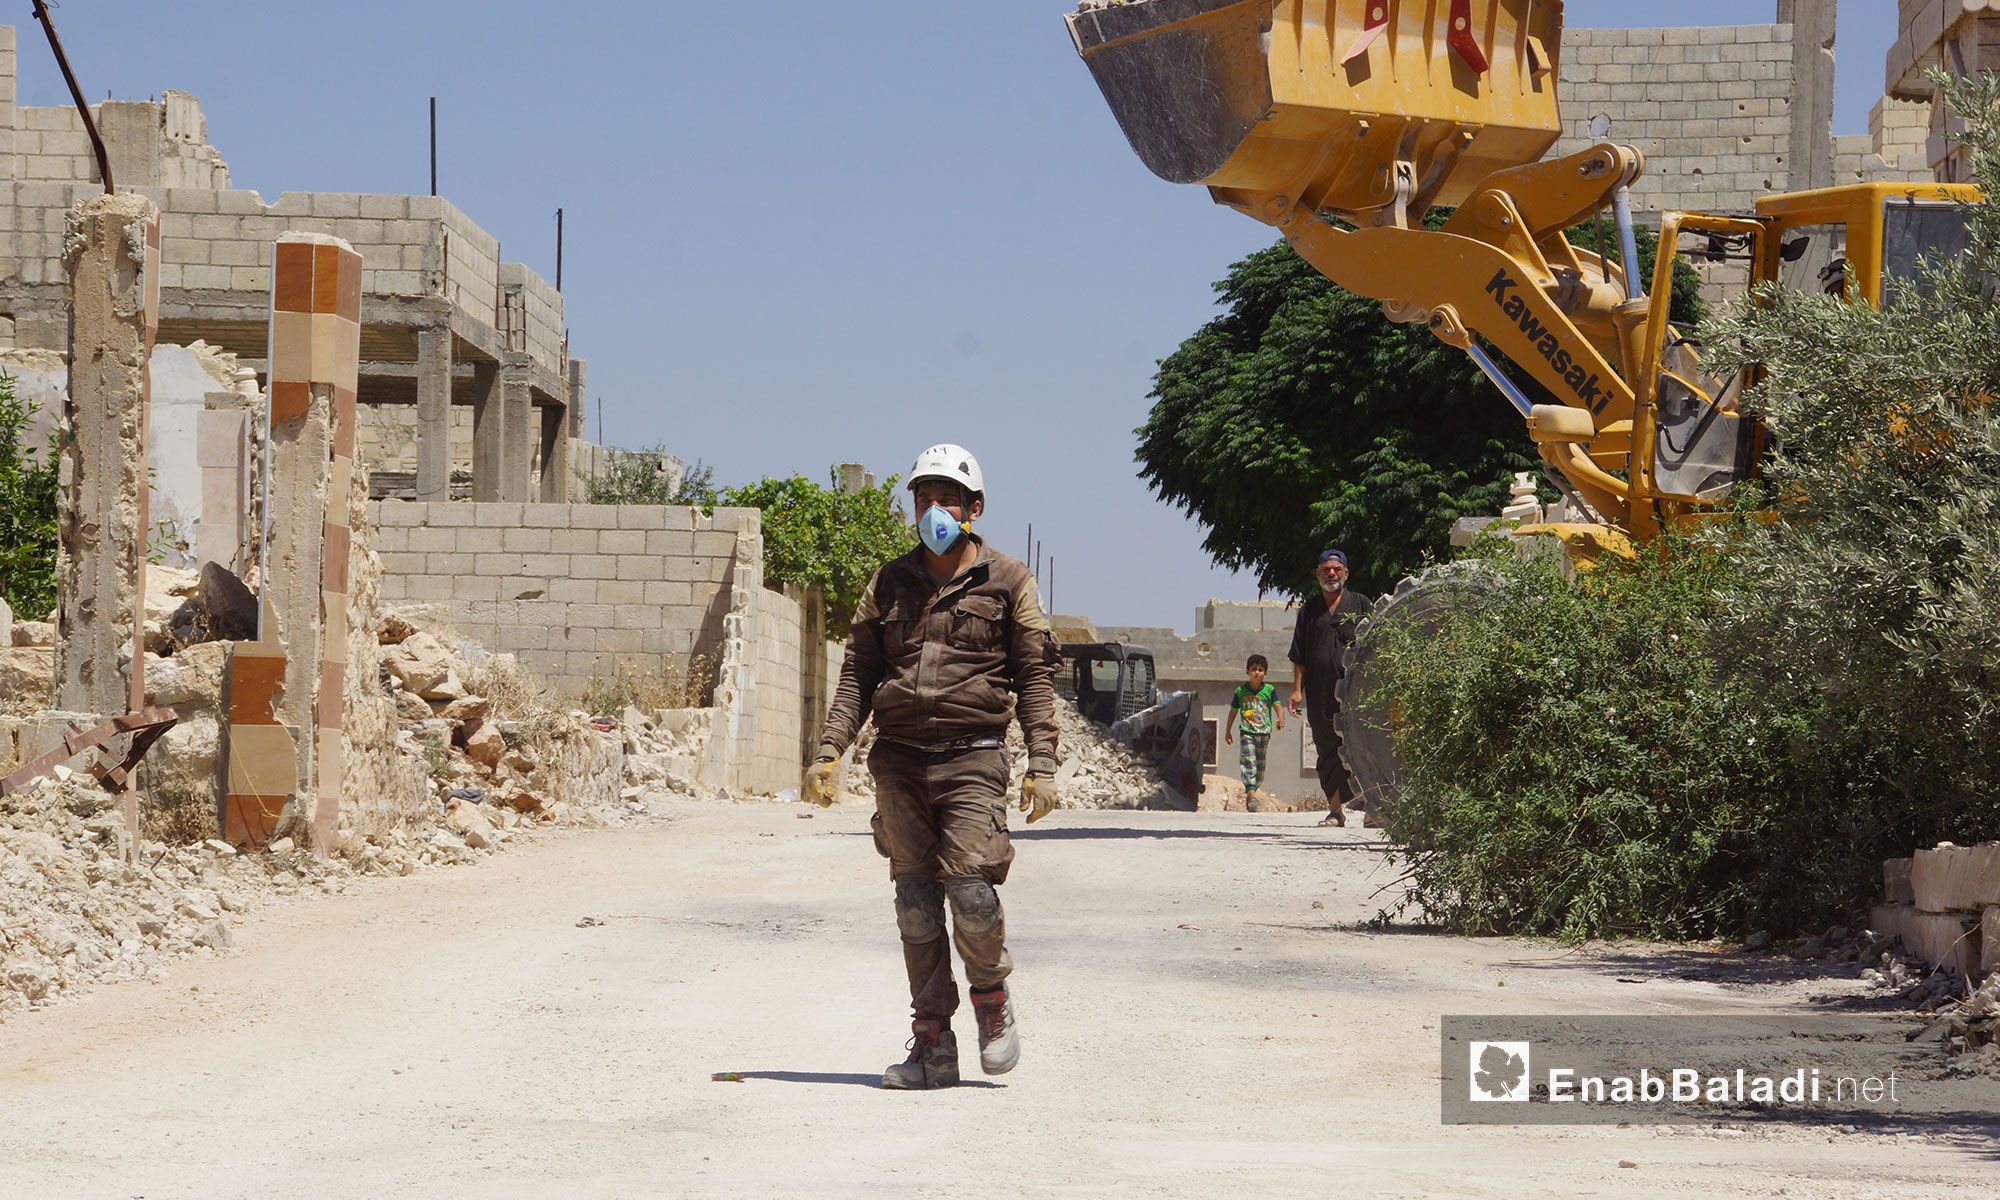 عناصر من الدفاع المدني يقومون بعملية تنظيف للطرقات ضمن حملة "إحياء الأرض" في مدينة مورك بريف حماة - 7 تموز 2018 (عنب بلدي)